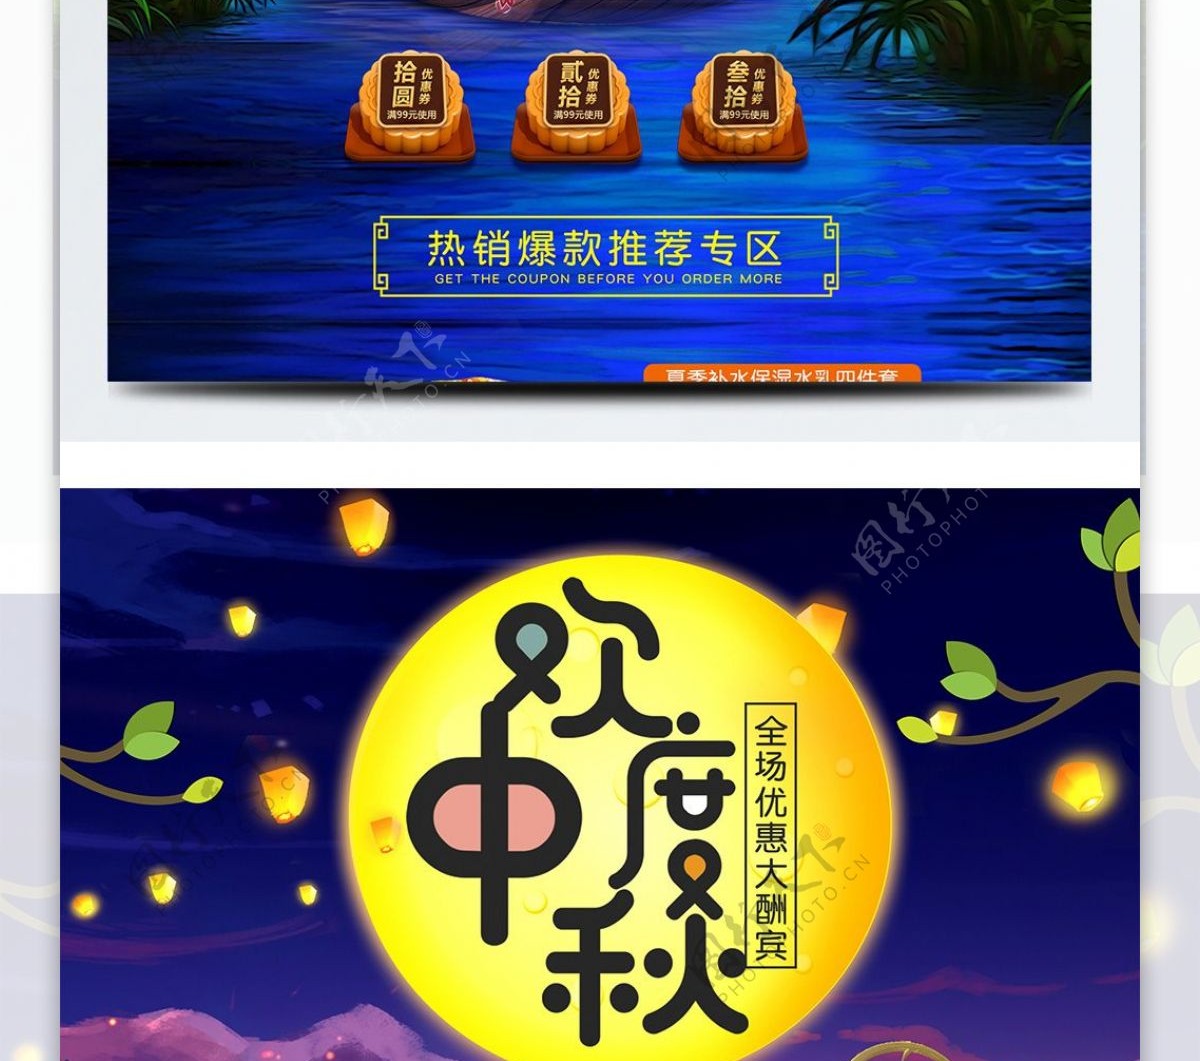 淘宝天猫中秋节团圆节食品美食首页